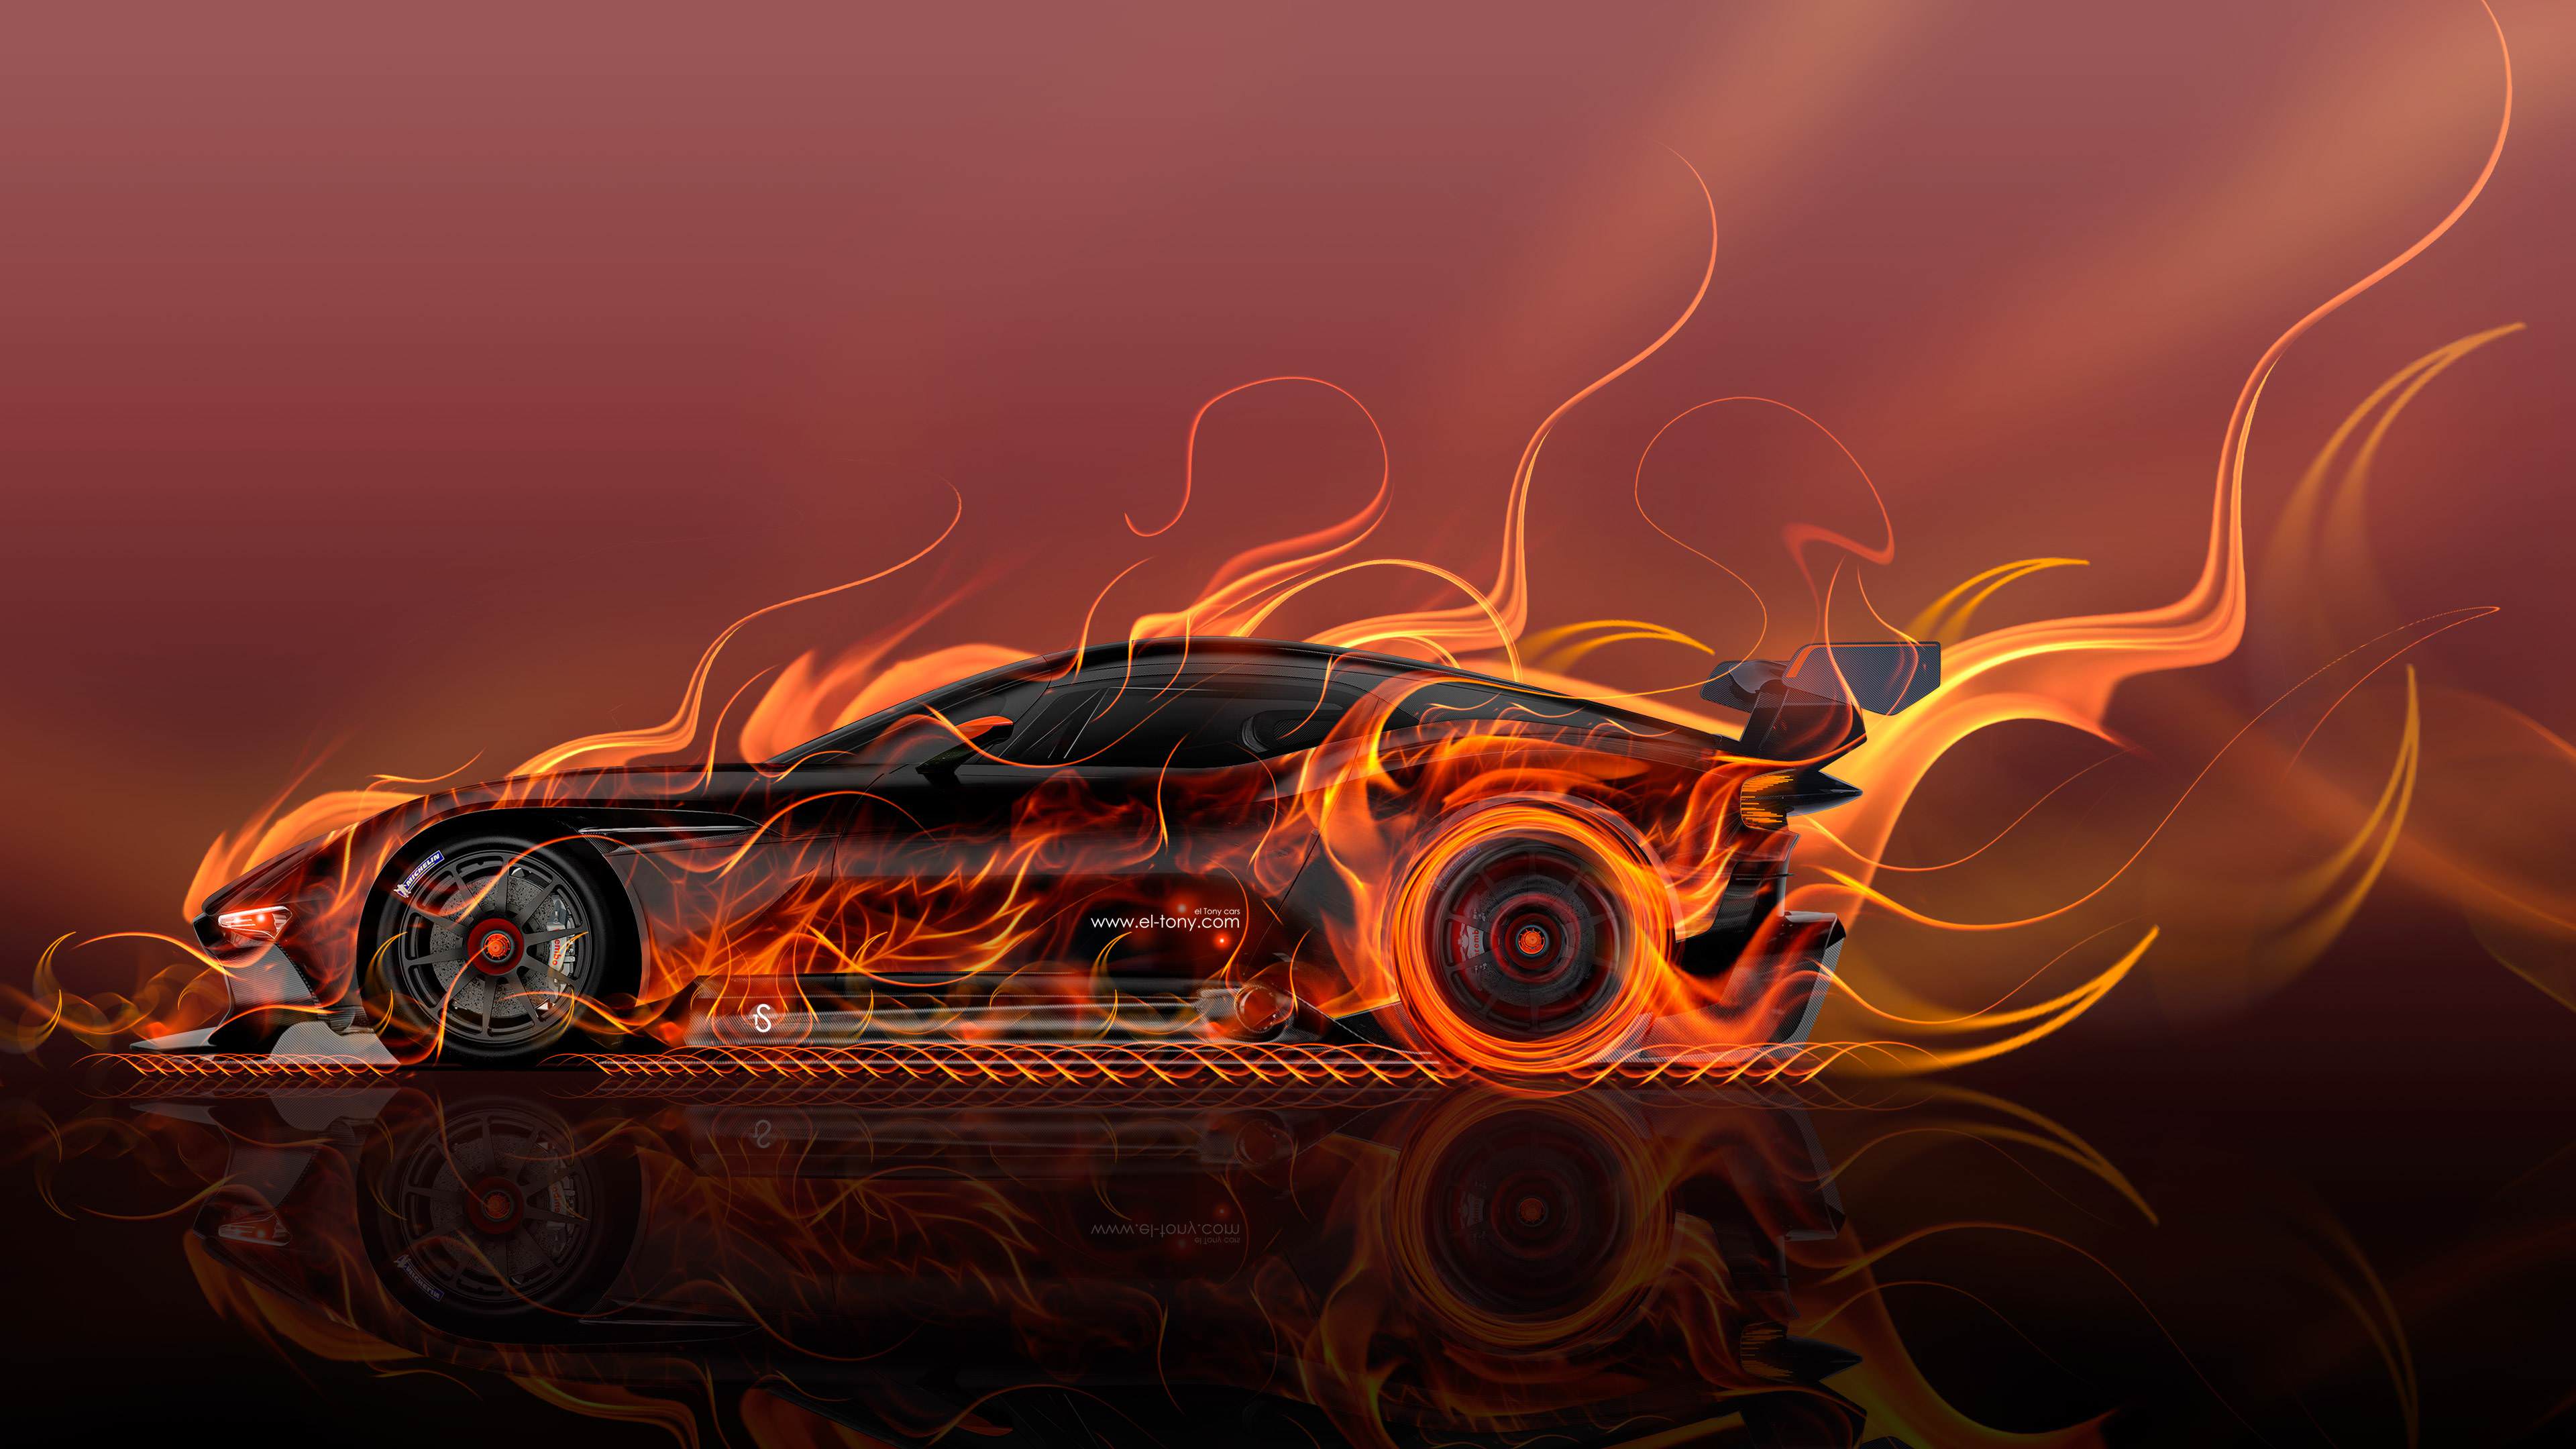 Aston Martin Vulcan Side Super Fire Abstract Car 2015 Original